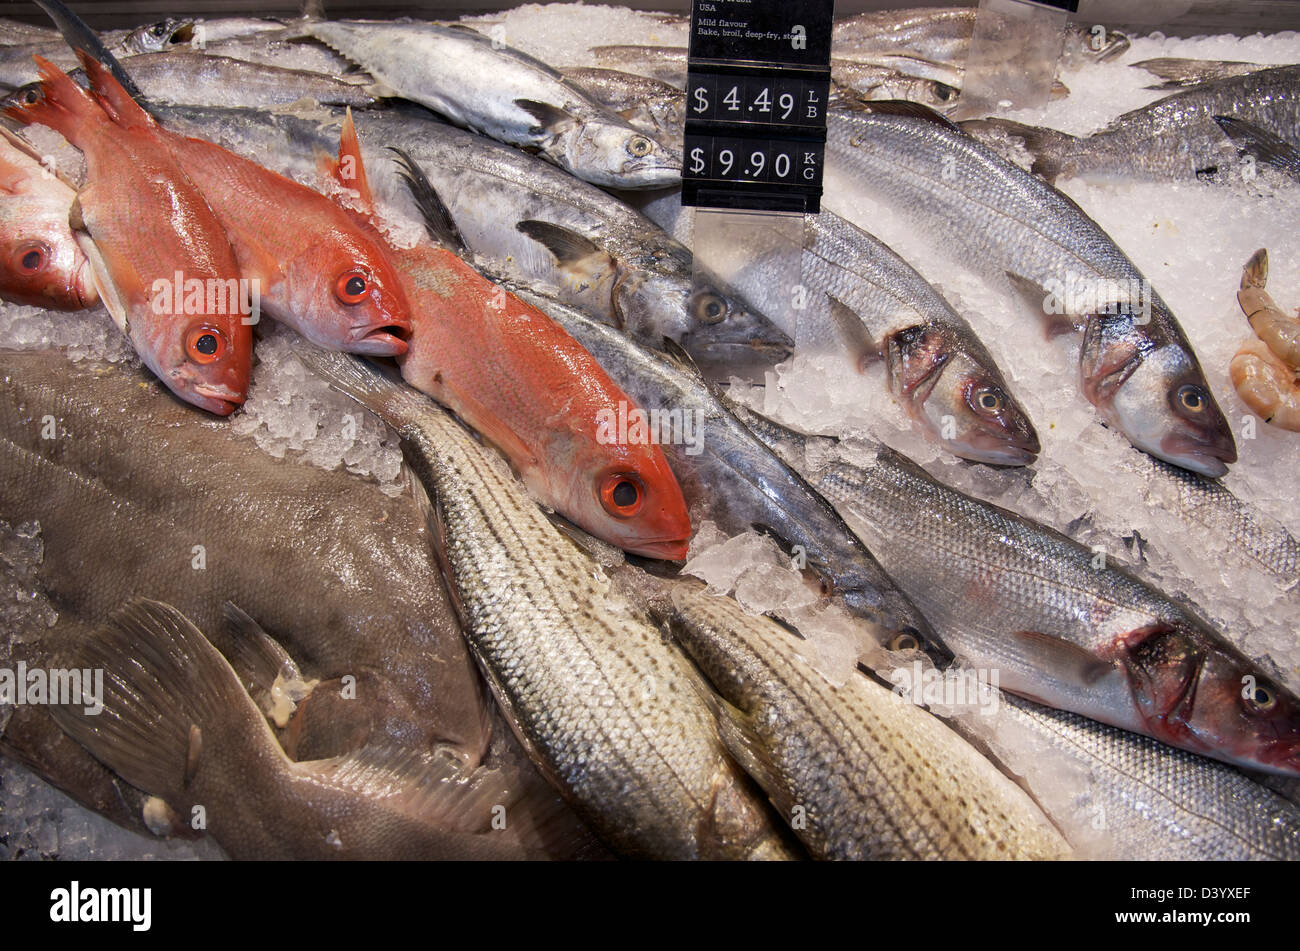 Varietà di pesce fresco sul ghiaccio, St Lawrence Market, Toronto, Ontario, Canada Foto Stock